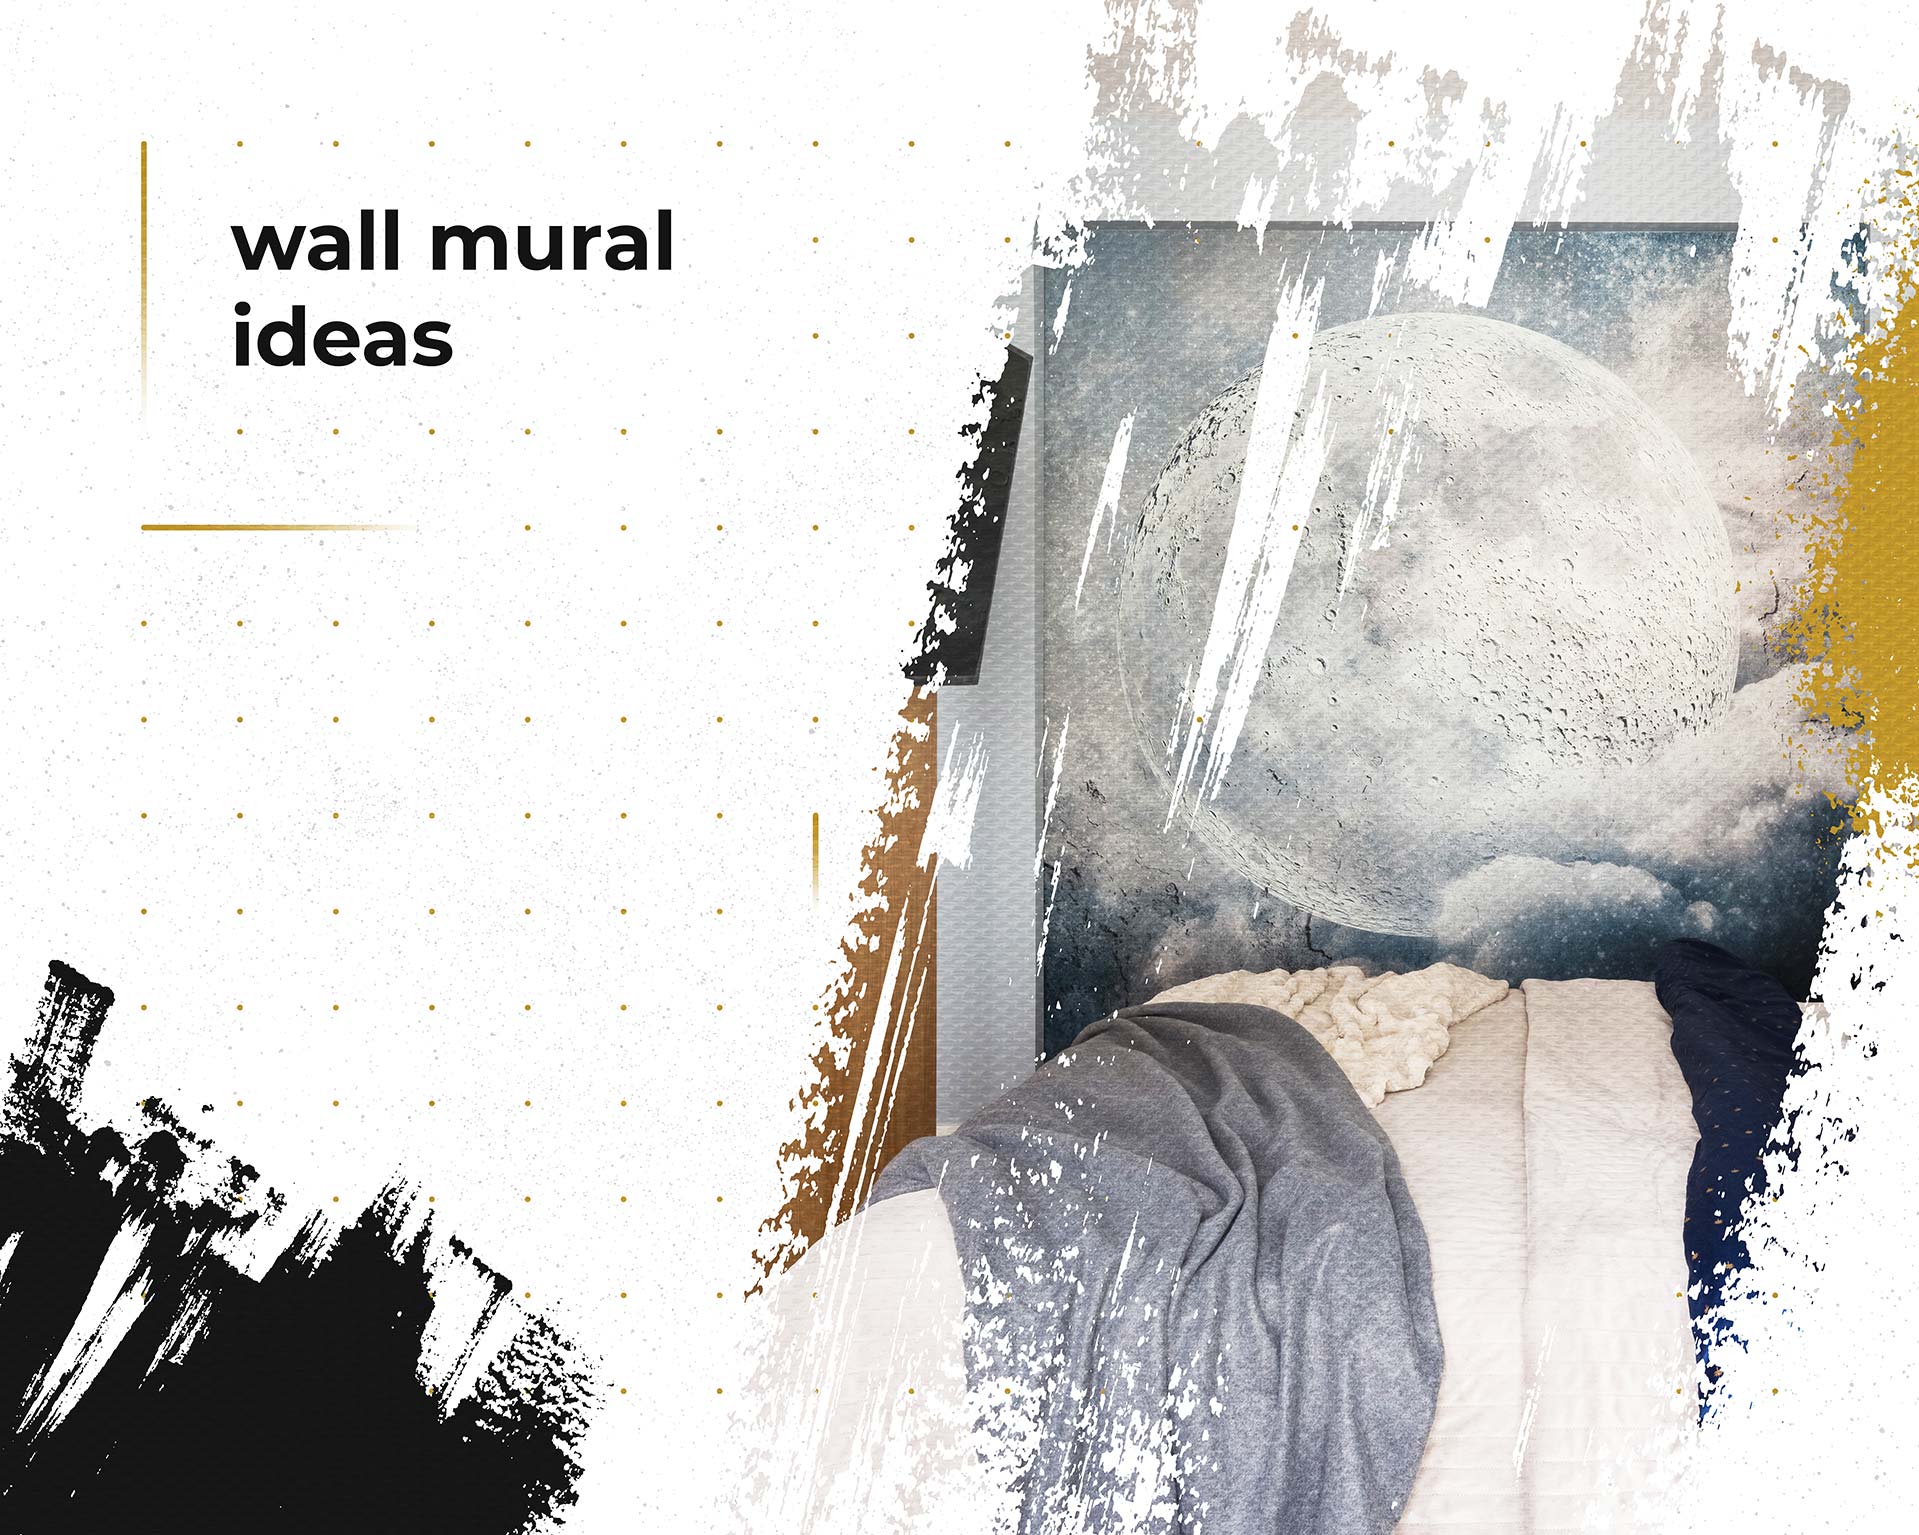 all wall mural ideas